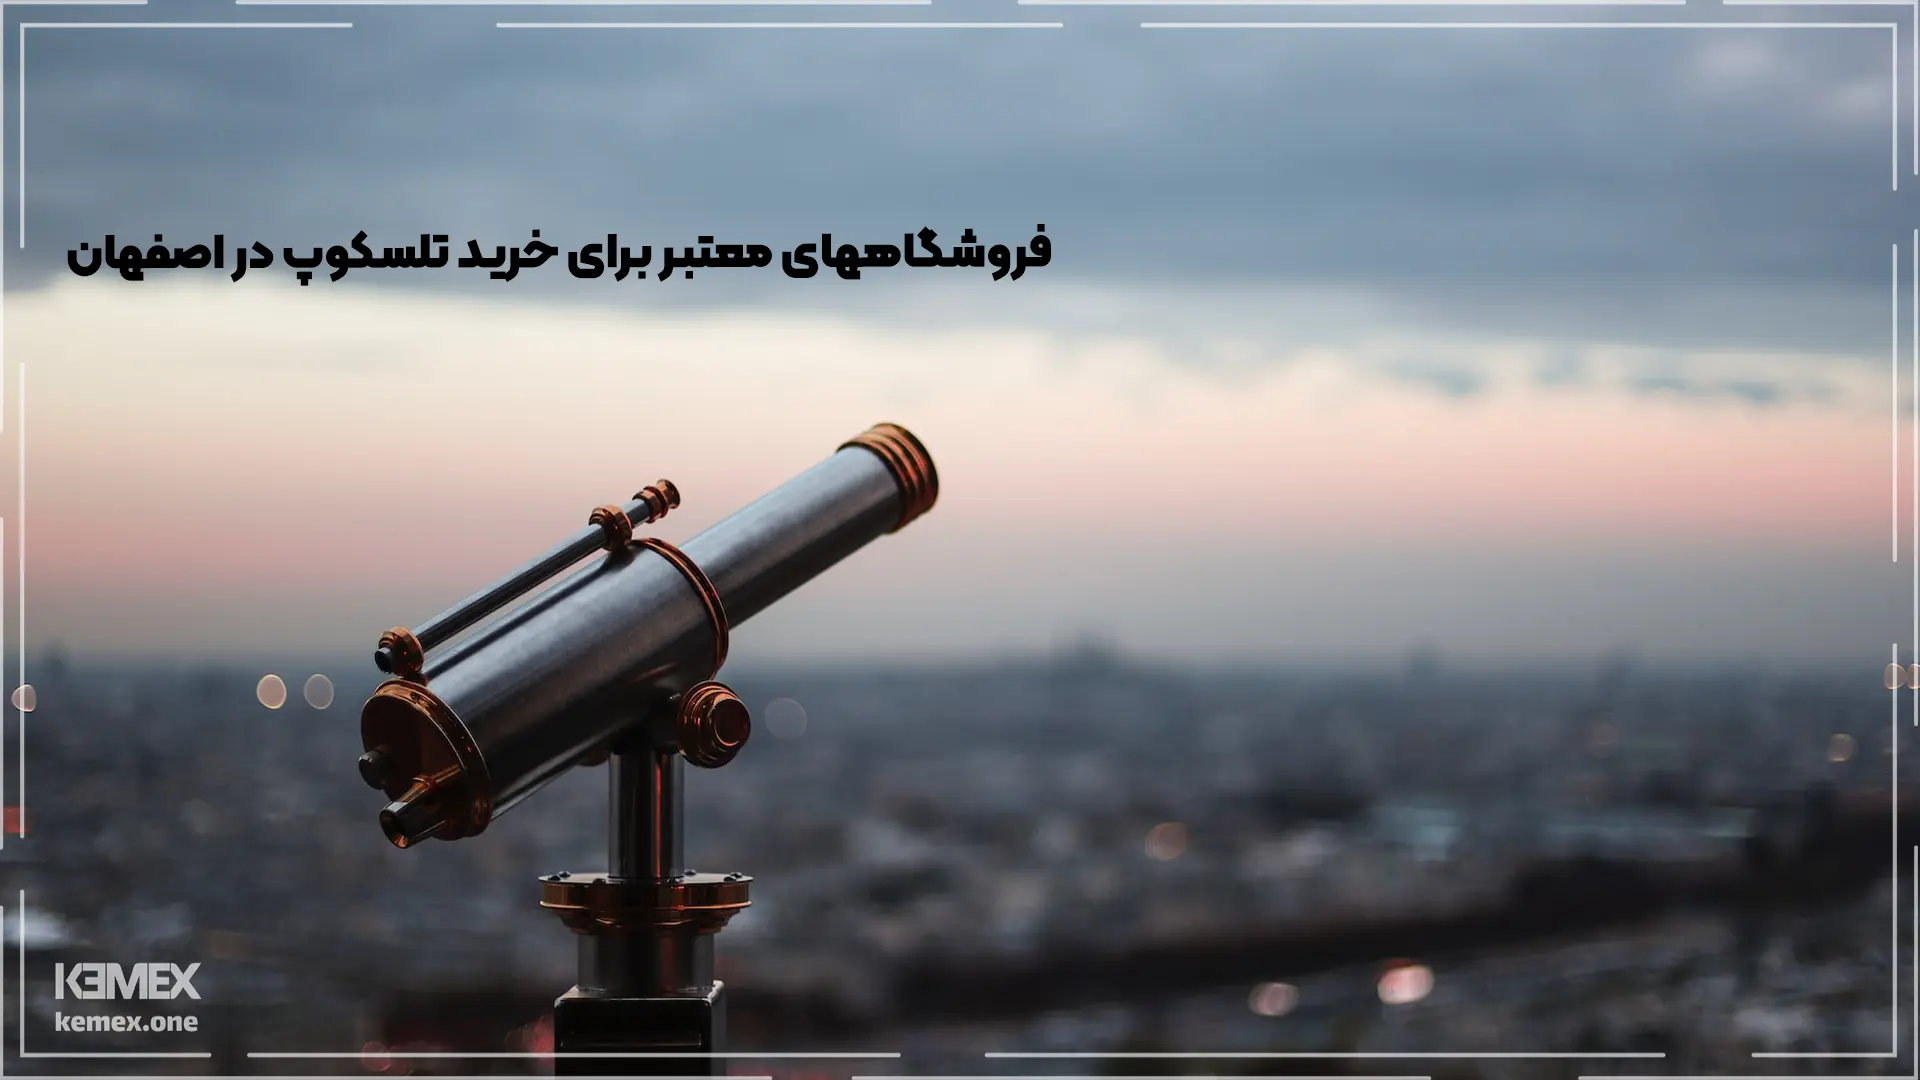 فروشگاه­های معتبر برای خرید تلسکوپ در اصفهان